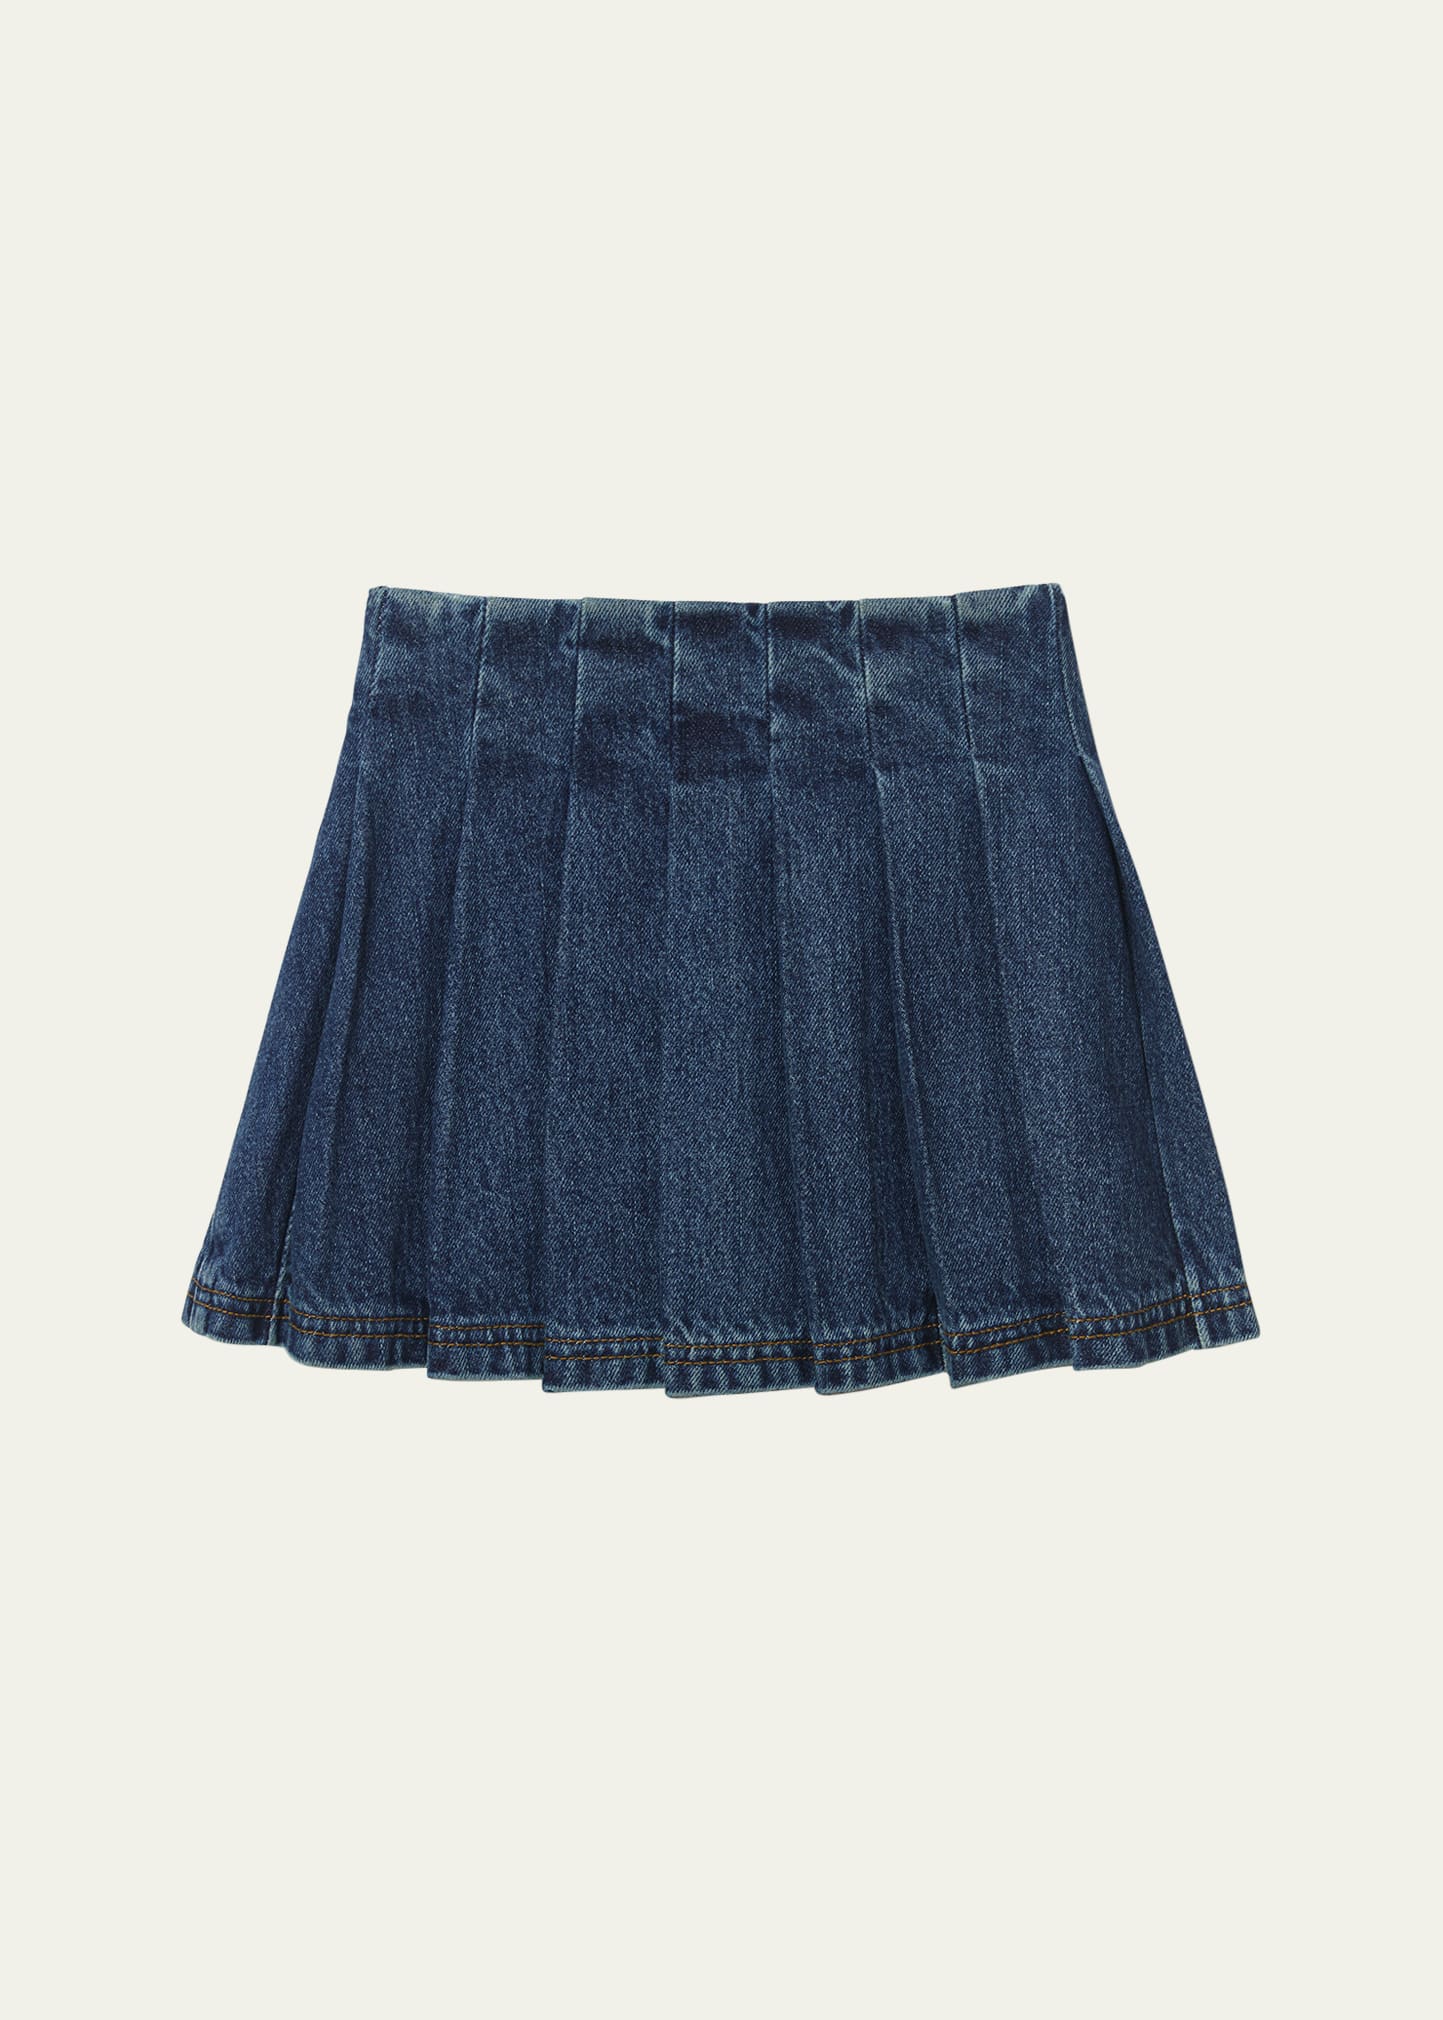 Self-portrait Kids' Girl's Pleated Denim Skirt In Blue